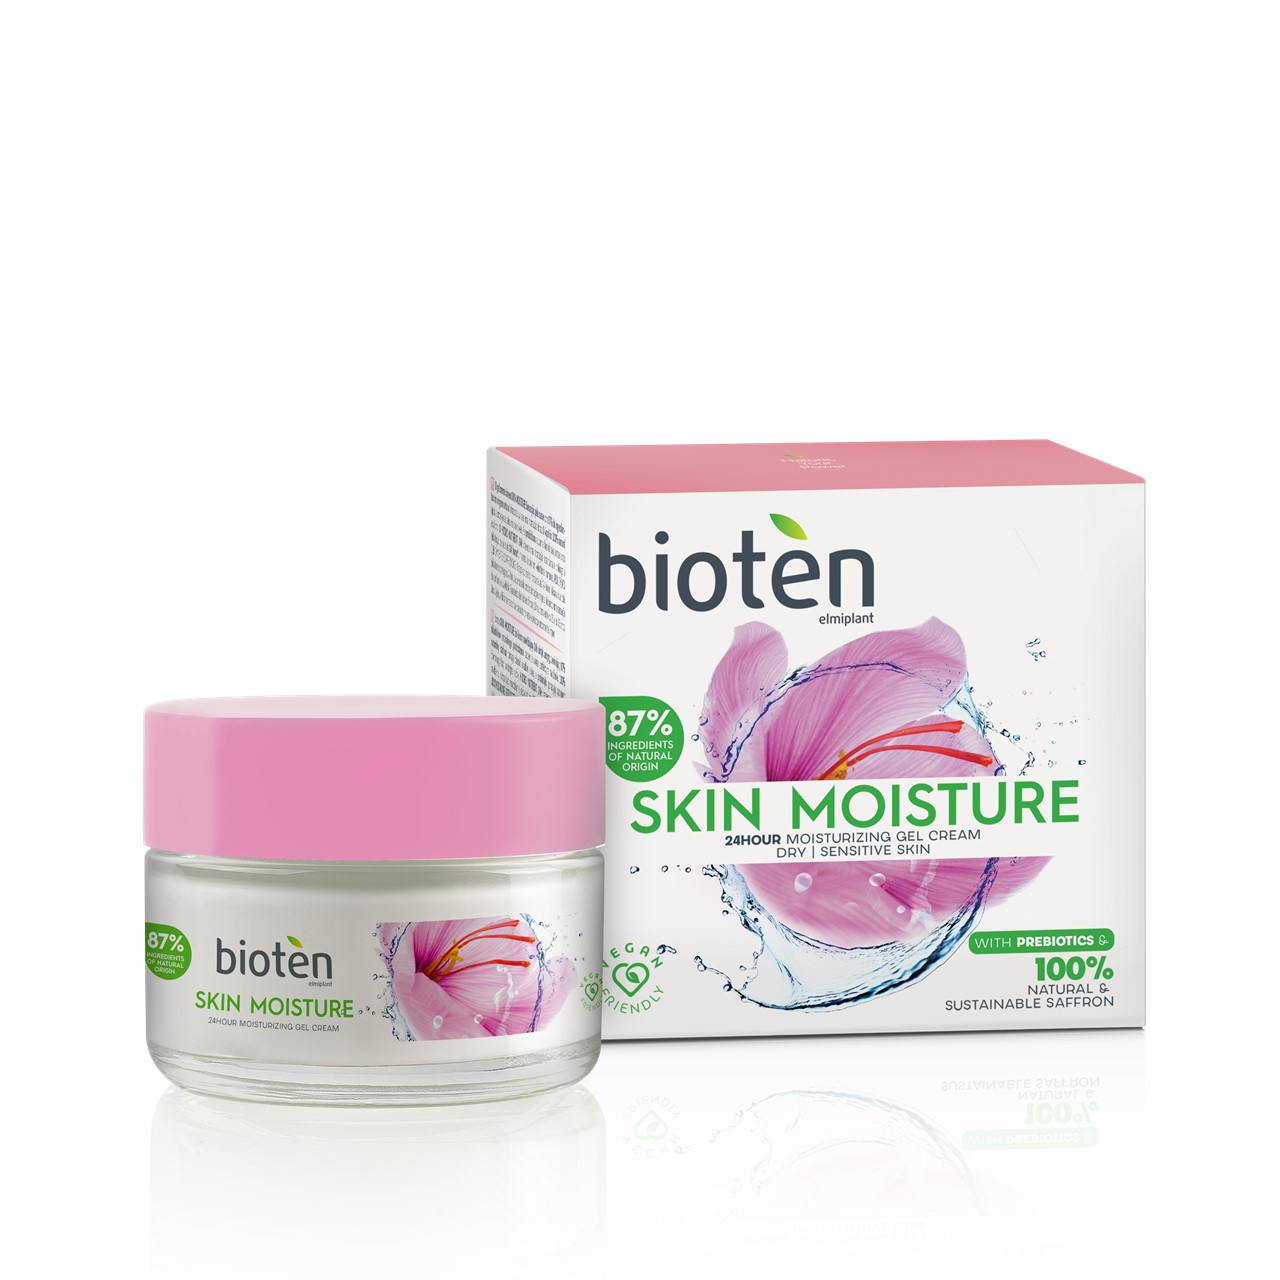 bioten Skin Moisture Face Gel Cream for Dry/Sensitive Skin 50ml (1.69fl oz)